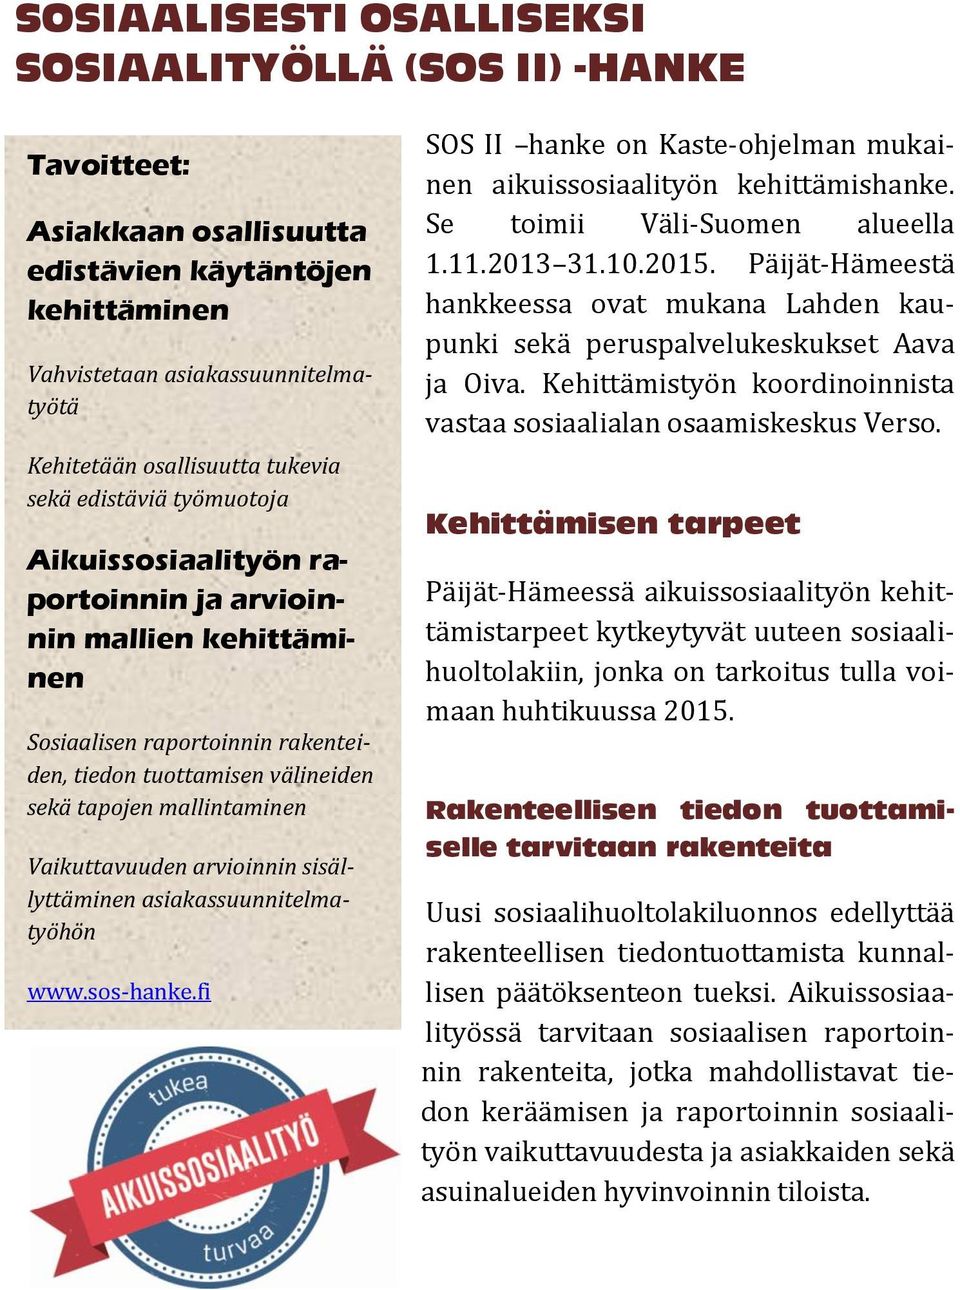 Vaikuttavuuden arvioinnin sisällyttäminen asiakassuunnitelmatyöhön www.sos-hanke.fi SOS II hanke on Kaste-ohjelman mukainen aikuissosiaalityön kehittämishanke. Se toimii Väli-Suomen alueella 1.11.